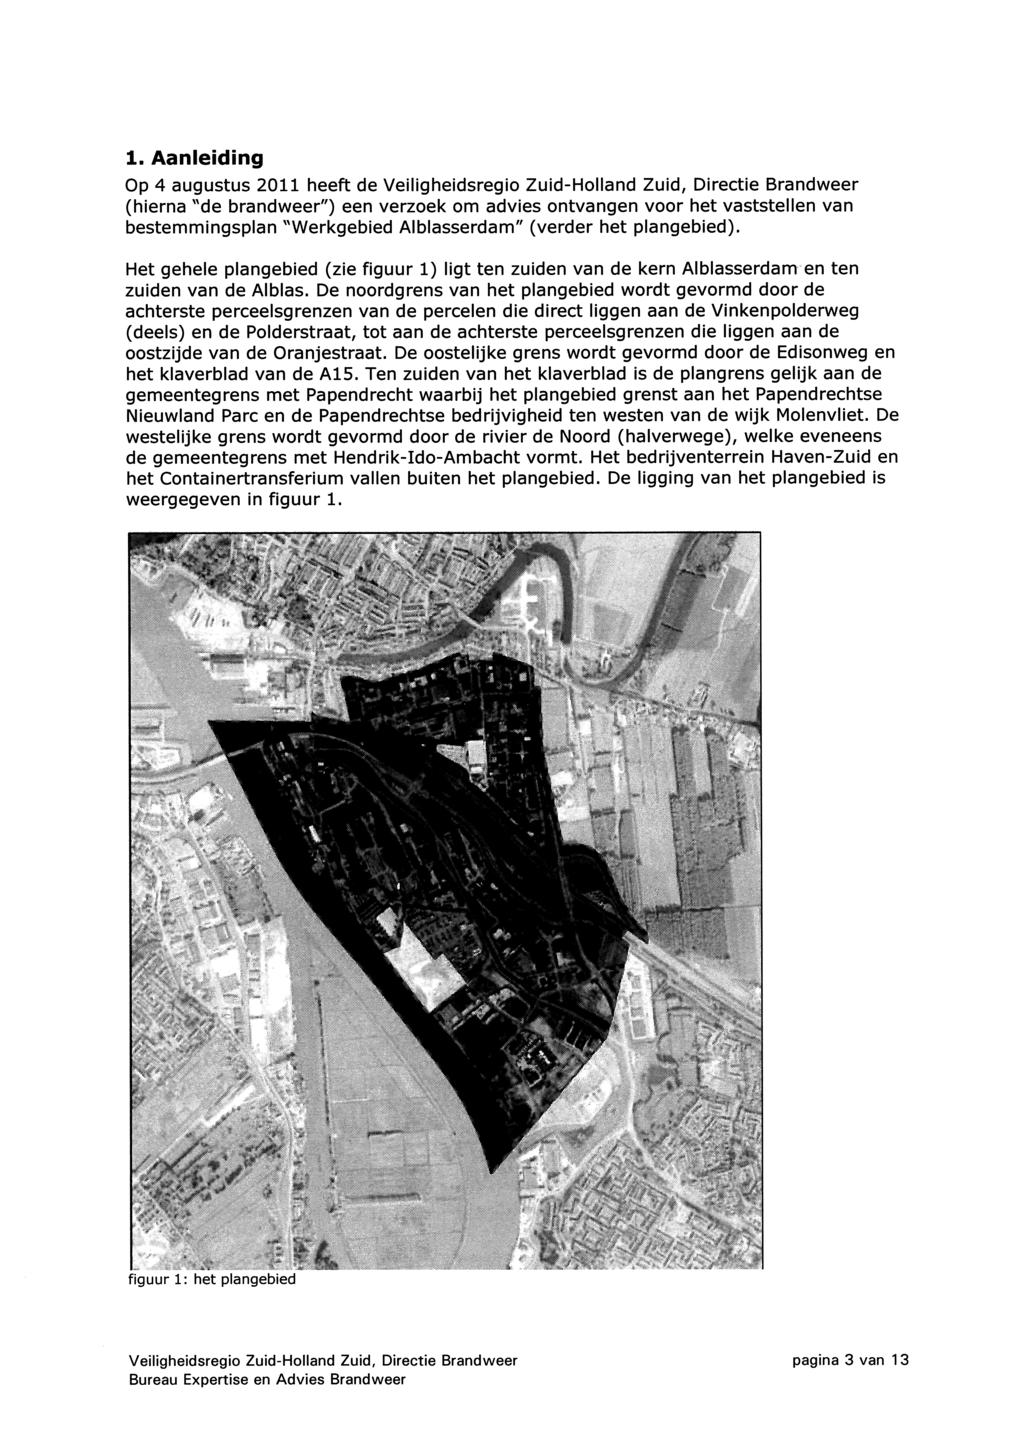 1. Aanleiding Op 4 augustus 2011 heeft de Veiligheidsregio Zuid-Holland Zuid, Directie Brandweer (hierna ''de brandweer") een verzoek om advies ontvangen voor het vaststellen van bestemmingsplan